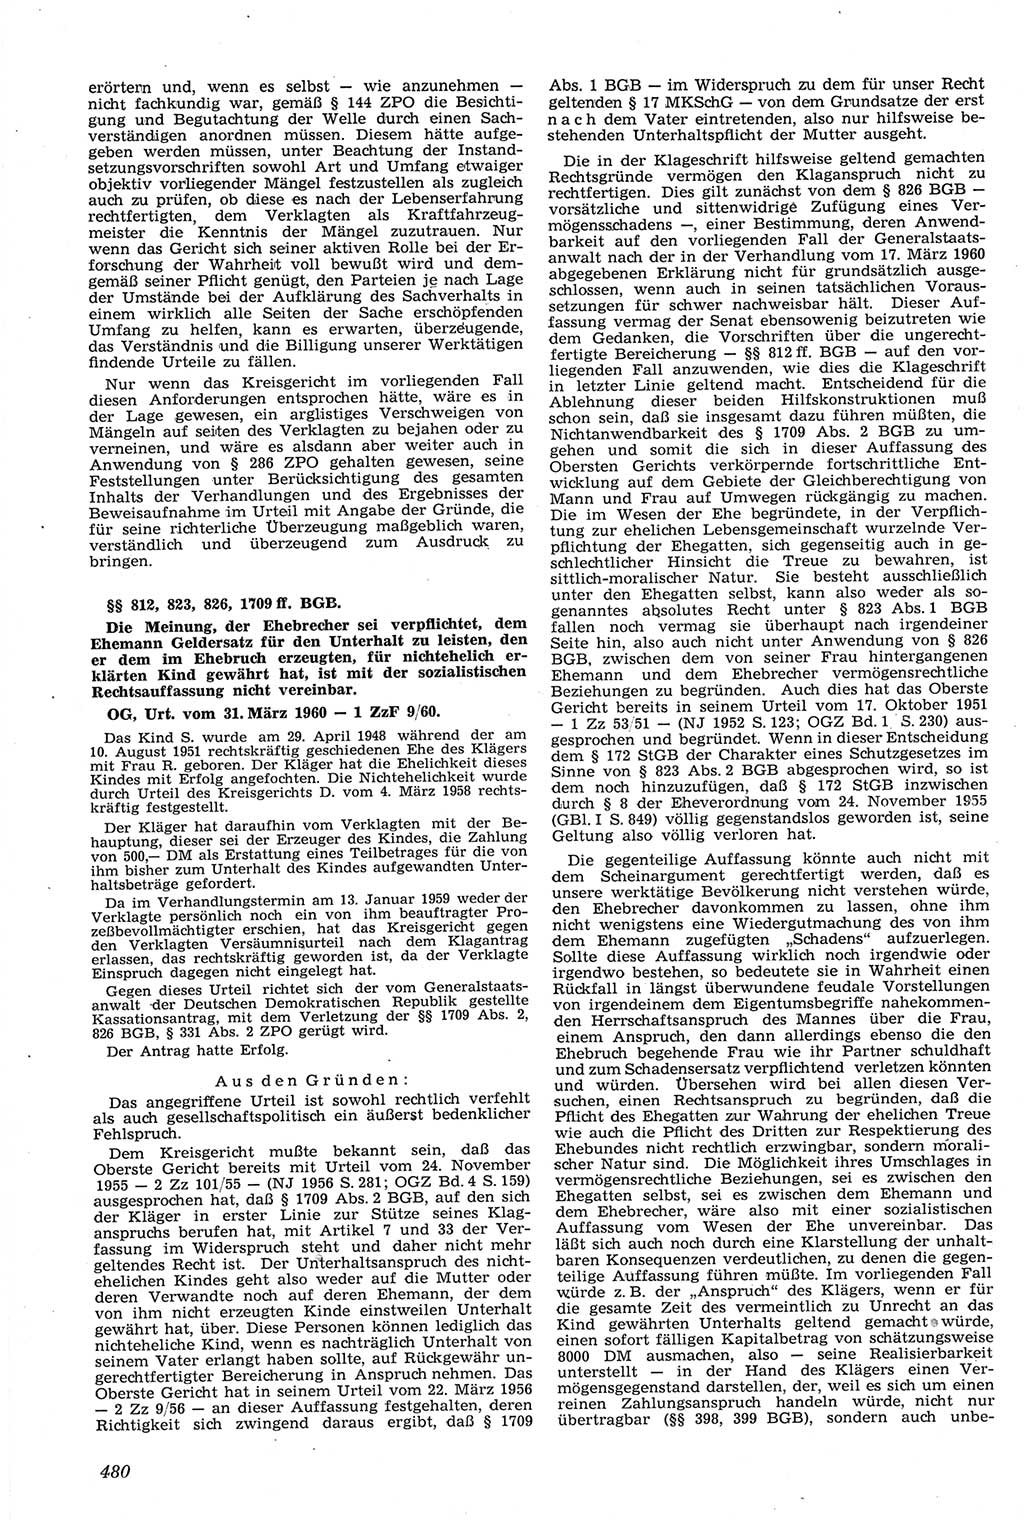 Neue Justiz (NJ), Zeitschrift für Recht und Rechtswissenschaft [Deutsche Demokratische Republik (DDR)], 14. Jahrgang 1960, Seite 480 (NJ DDR 1960, S. 480)